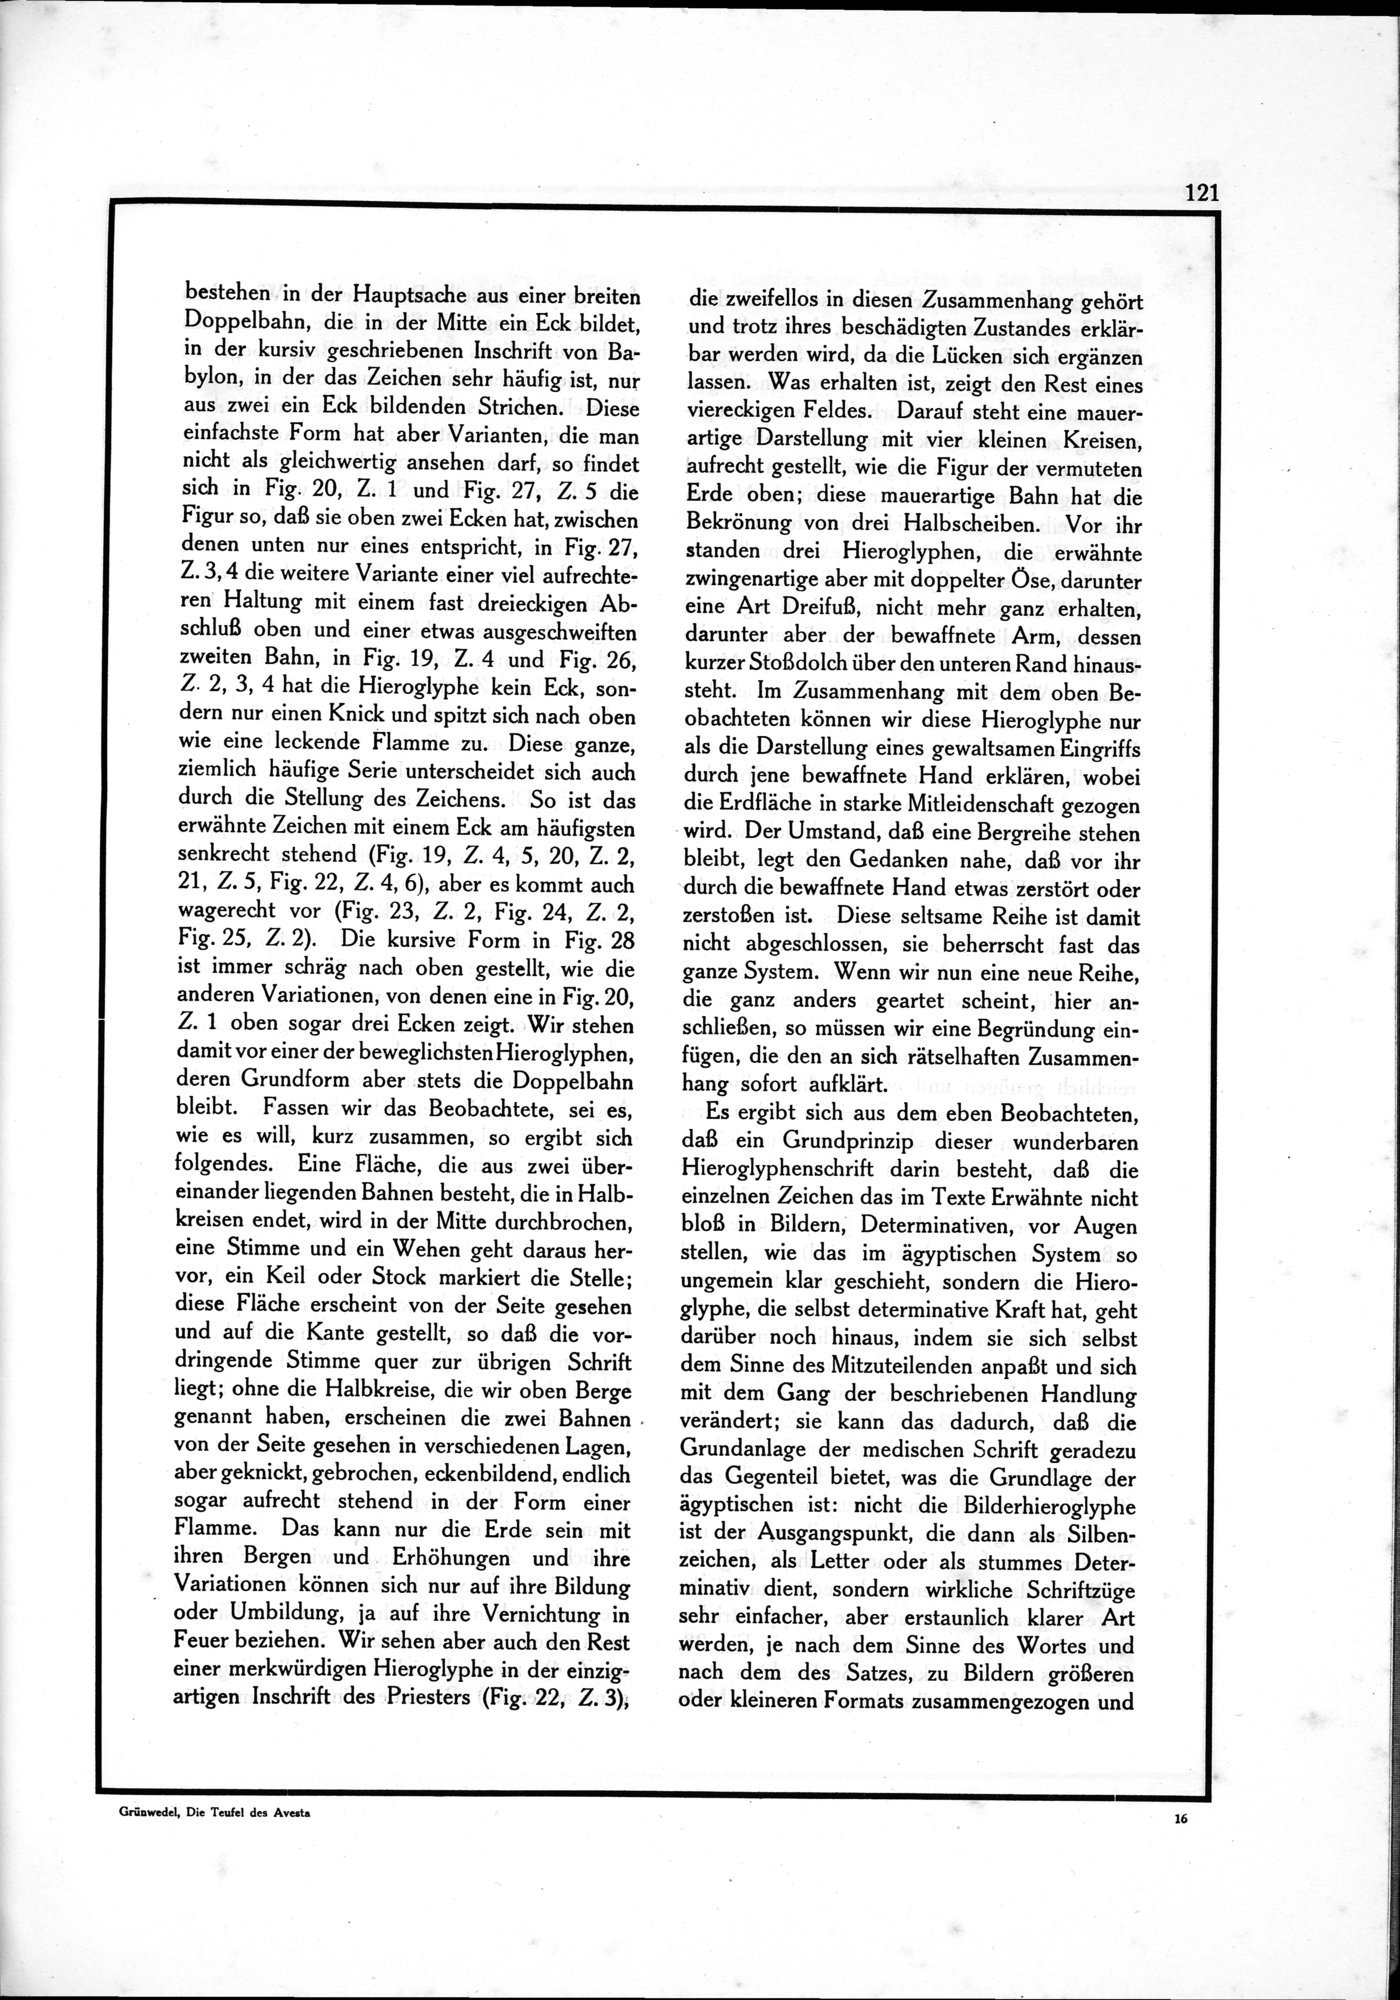 Die Teufel des Avesta und Ihre Beziehungen zur Ikonographie des Buddhismus Zentral-Asiens : vol.1 / Page 125 (Grayscale High Resolution Image)